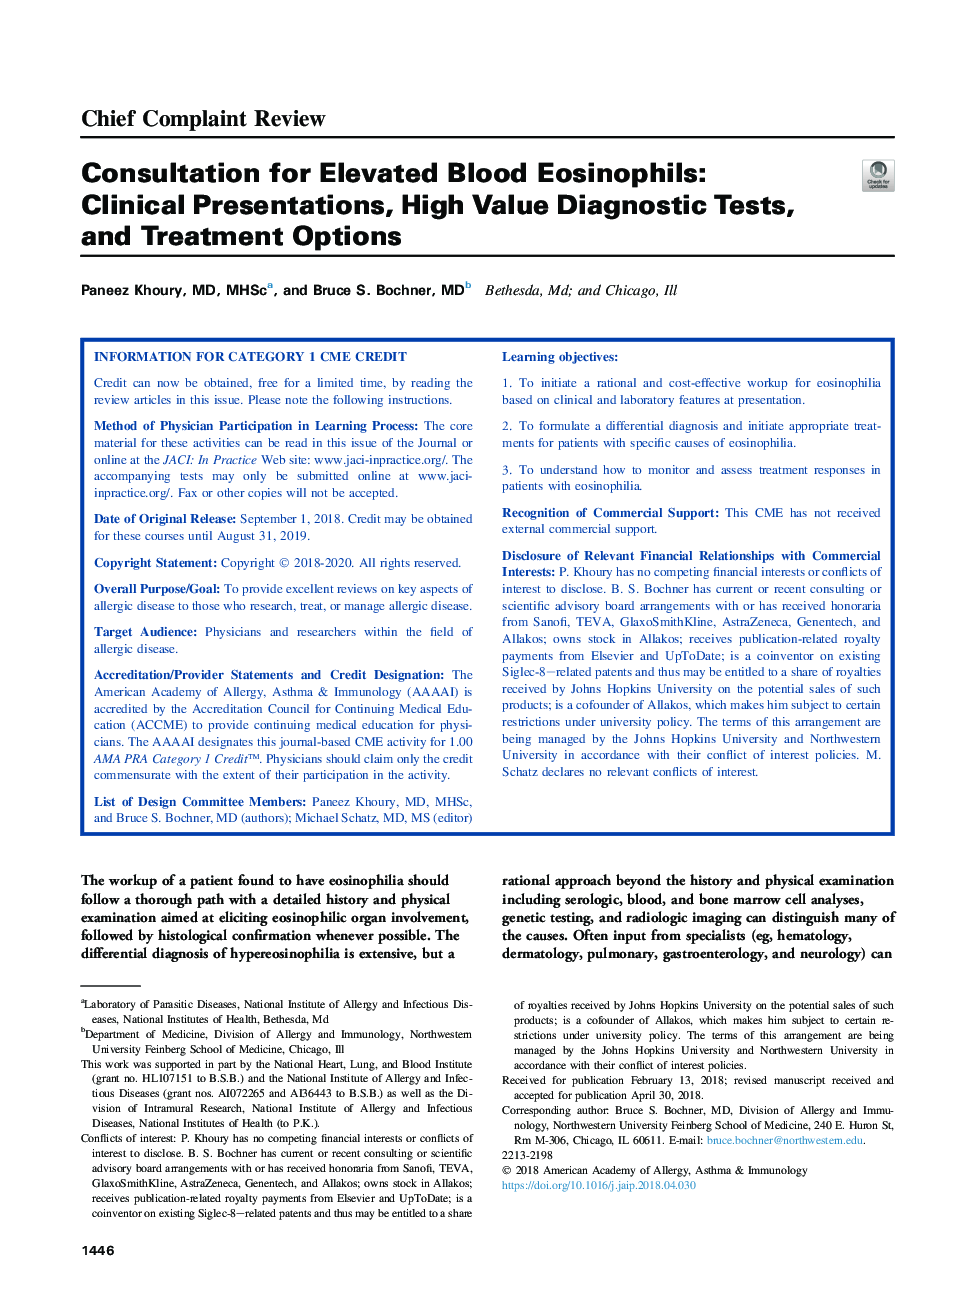 مشاوره برای افزایش ائوزینوفیل خون: ارائه های بالینی، آزمایشات تشخیصی با ارزش و گزینه های درمان